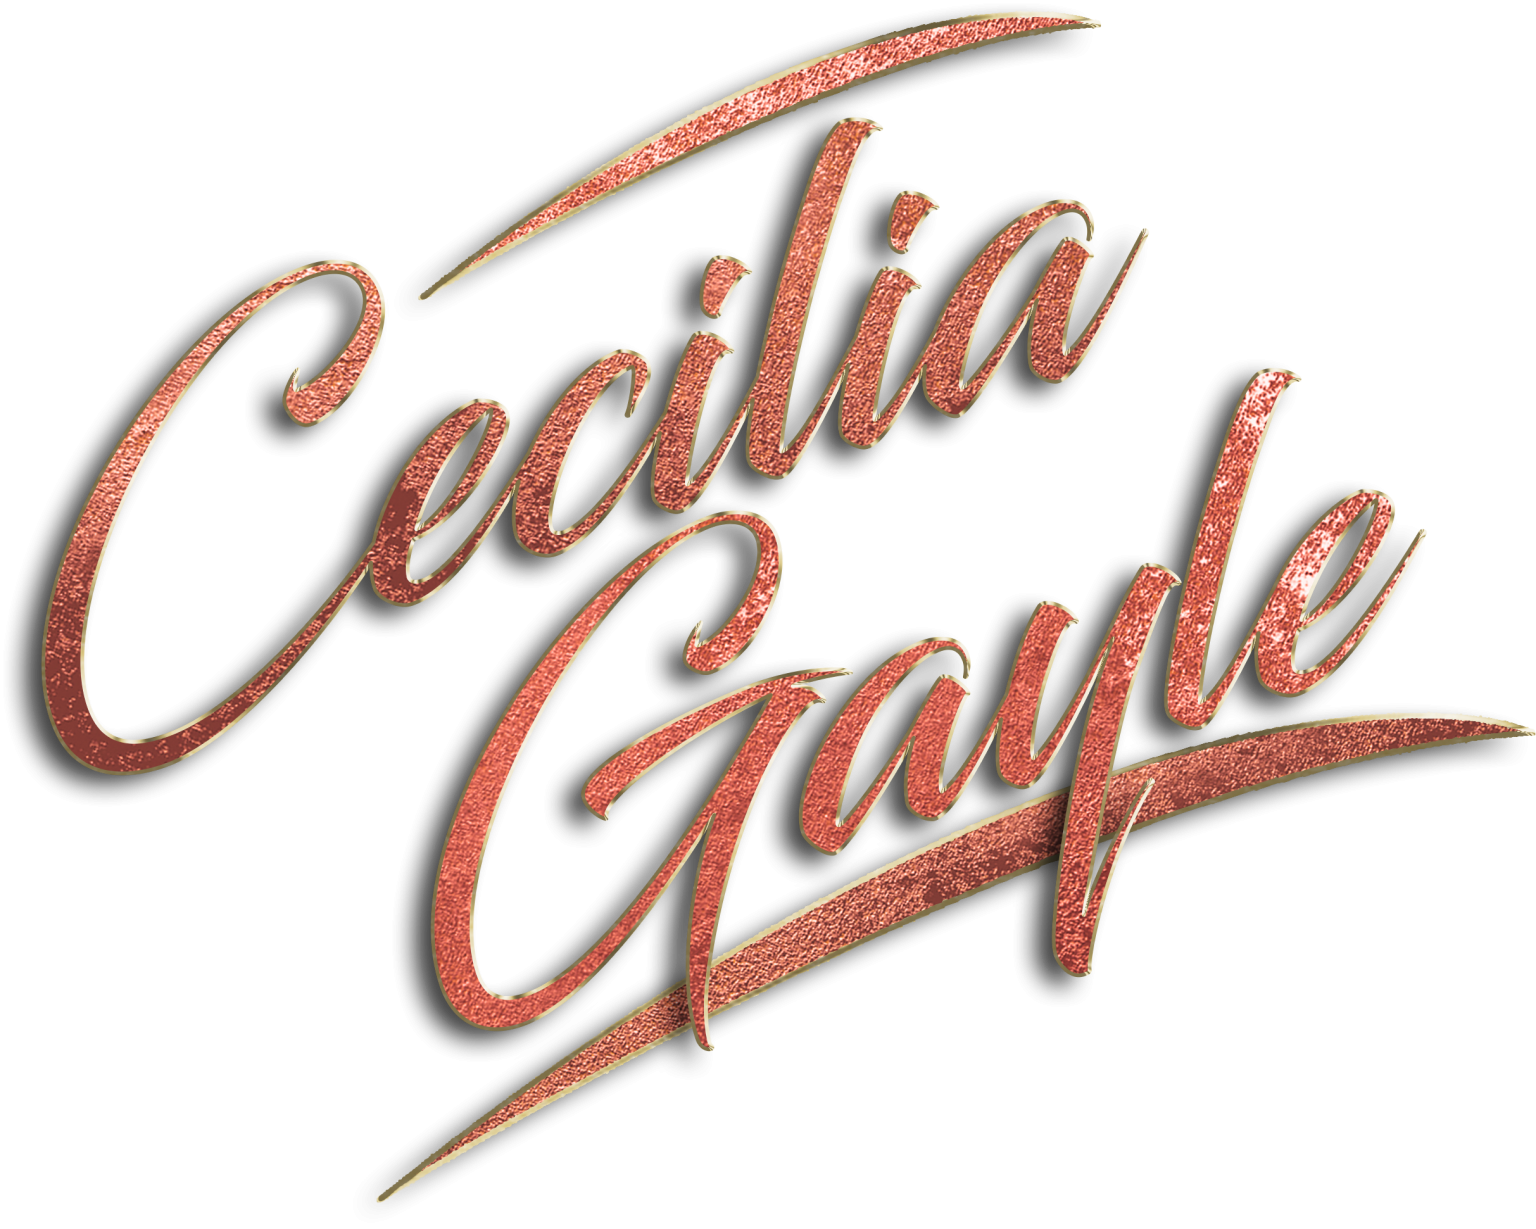 Cecilia Gayle